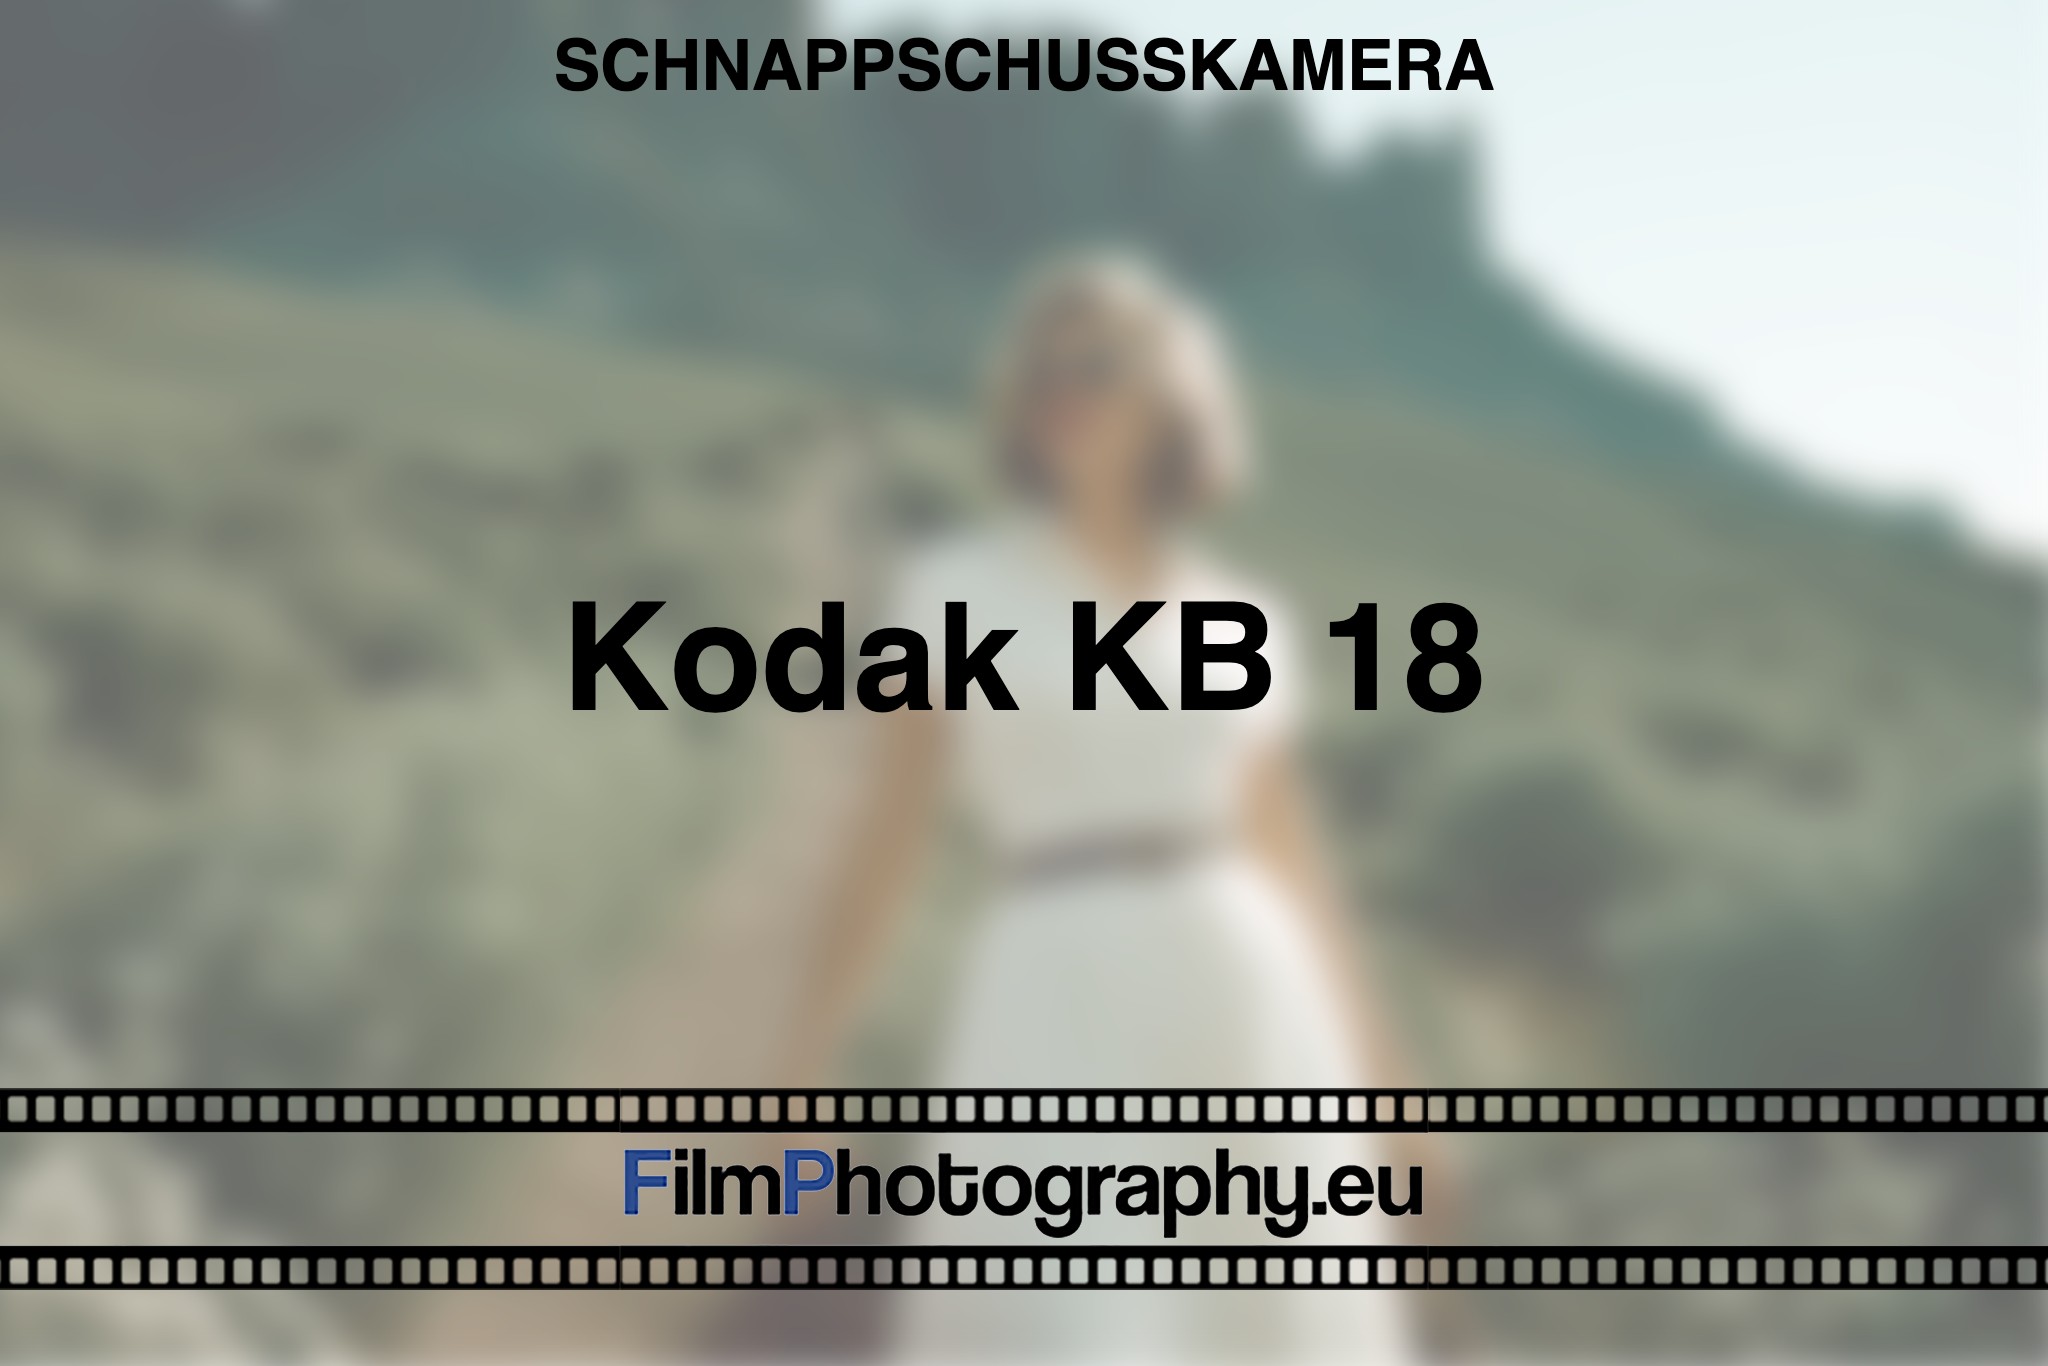 kodak-kb-18-schnappschusskamera-bnv